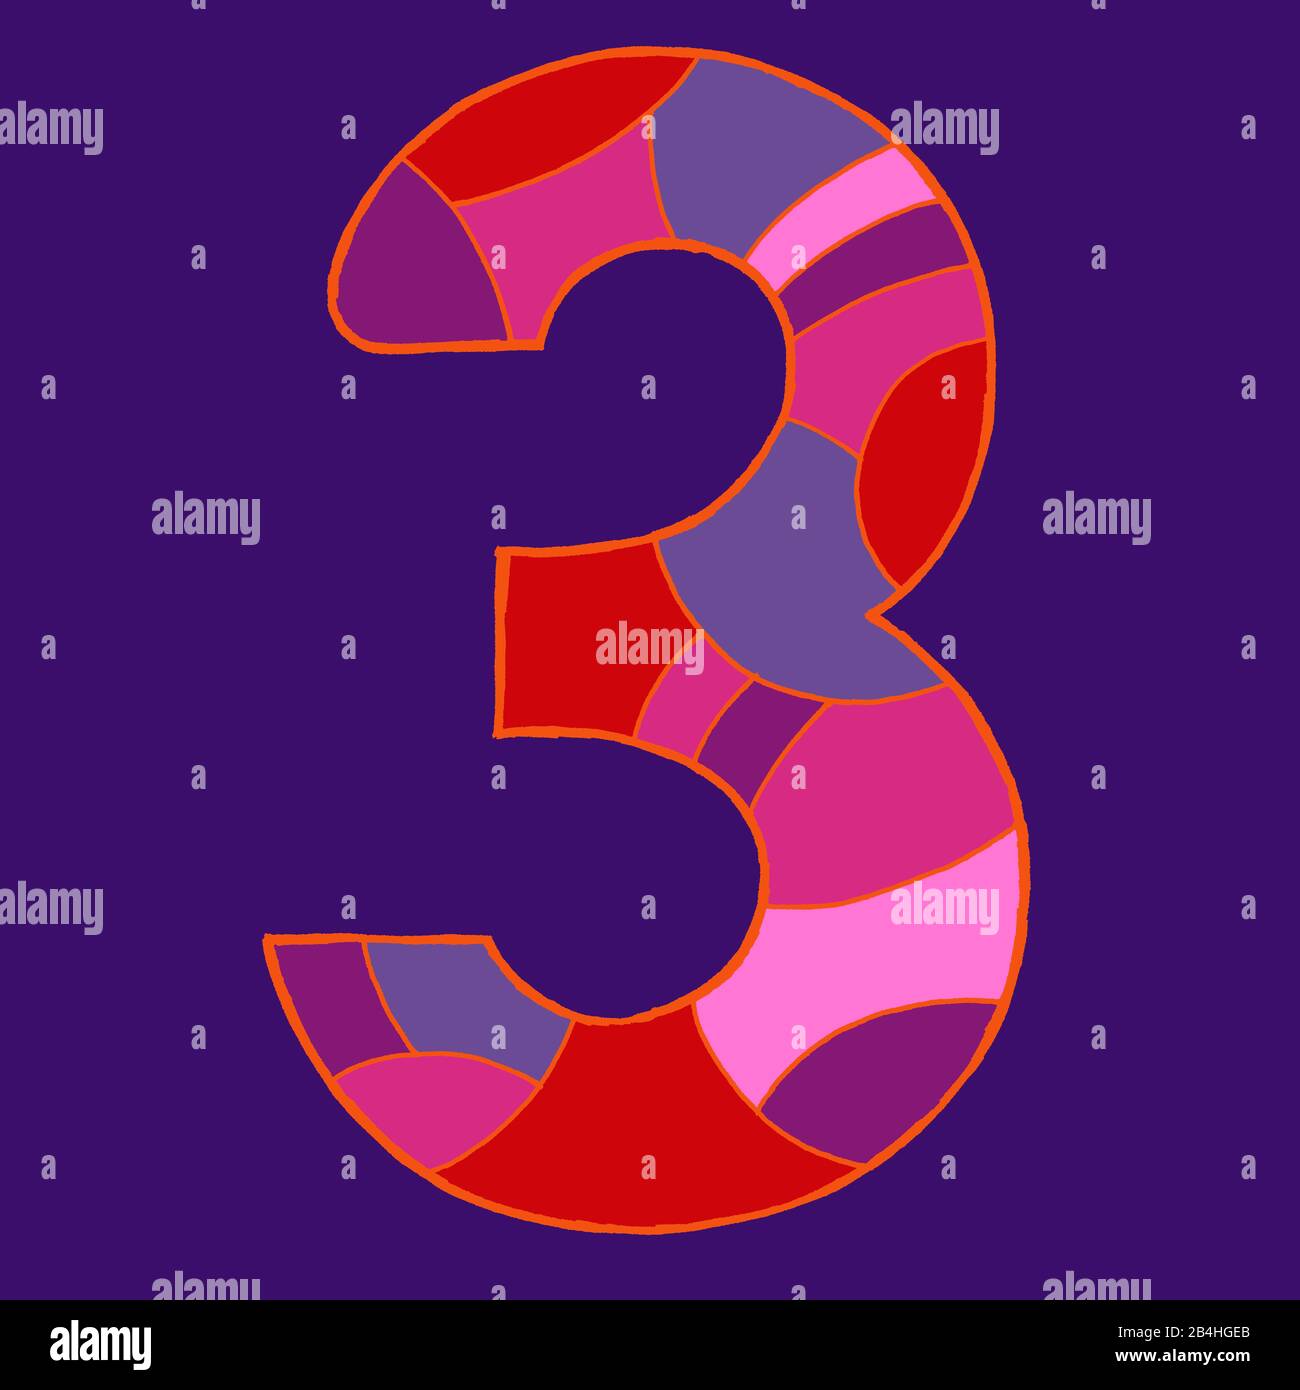 Numero tre, disegnato come illustrazione vettoriale, in tonalità viola-rosse su sfondo viola scuro in stile pop art Foto Stock